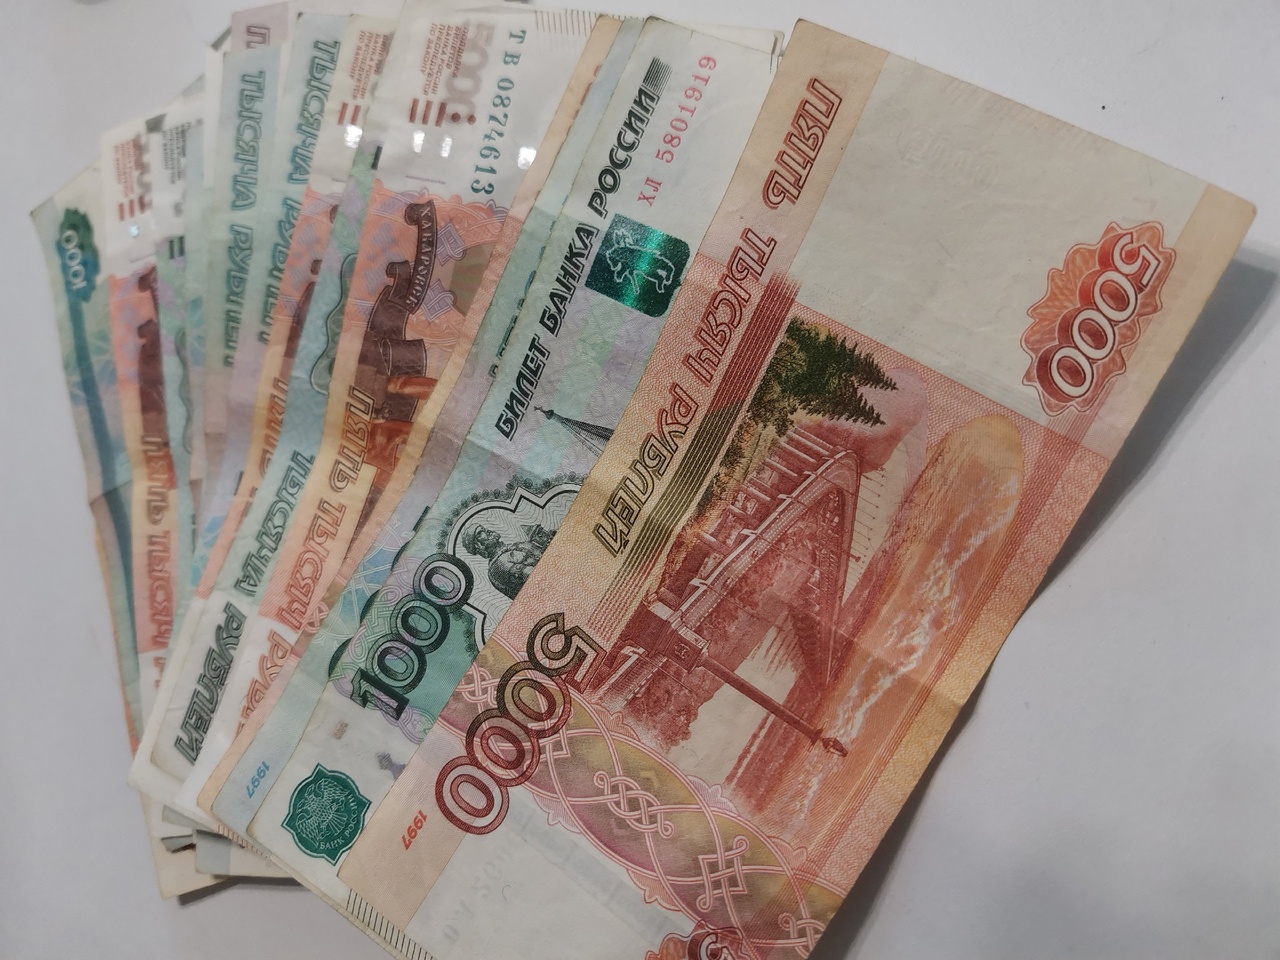  Самарчанка хотела заработать на бирже и отправила мошенникам более 1 млн рублей 